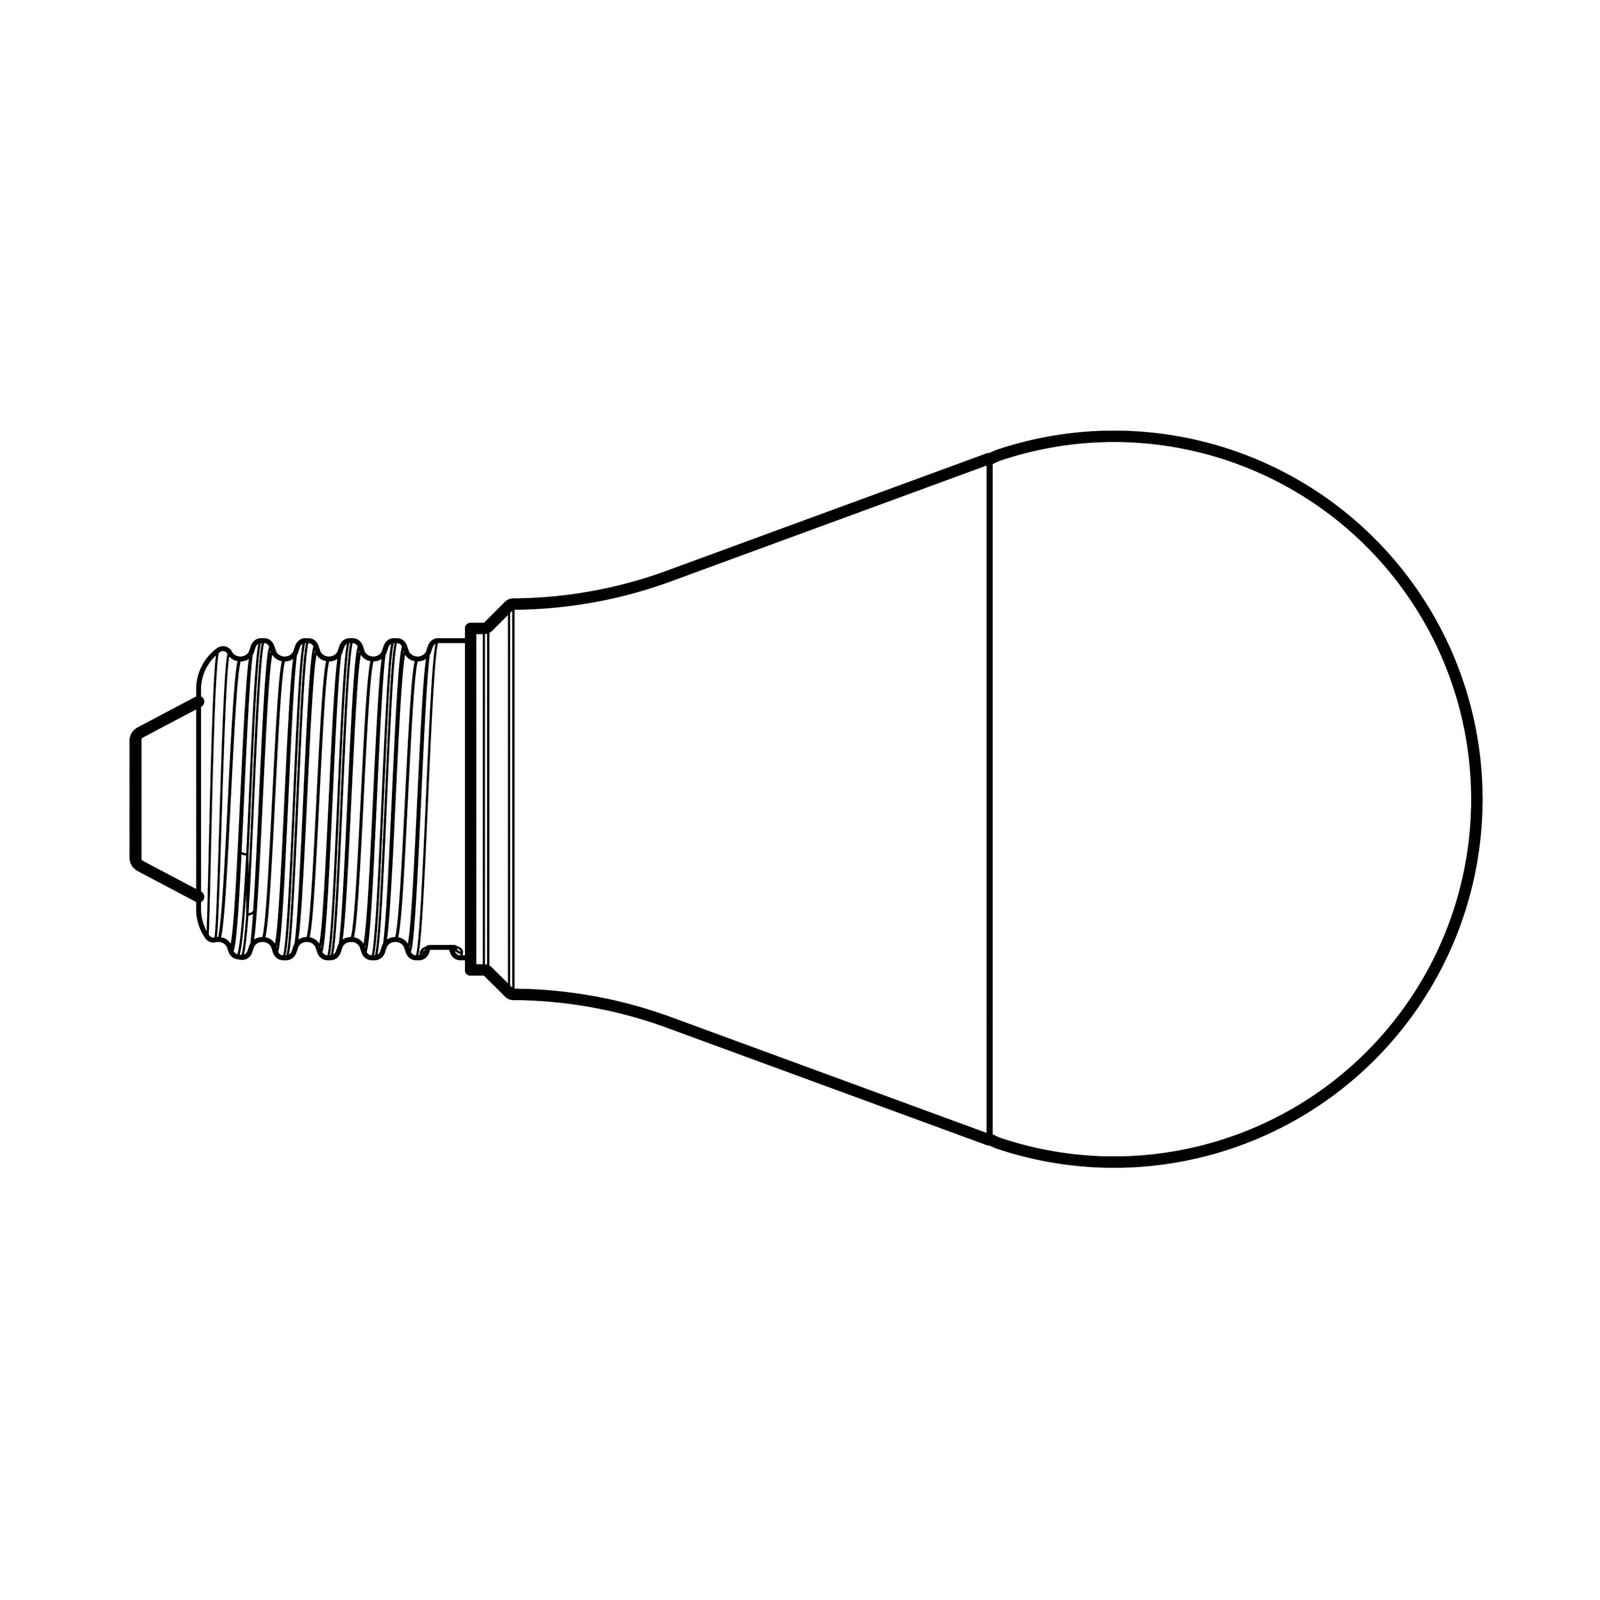 LED žiarovka, matná, E27, 6,5 W, 3000 K, 900 lm